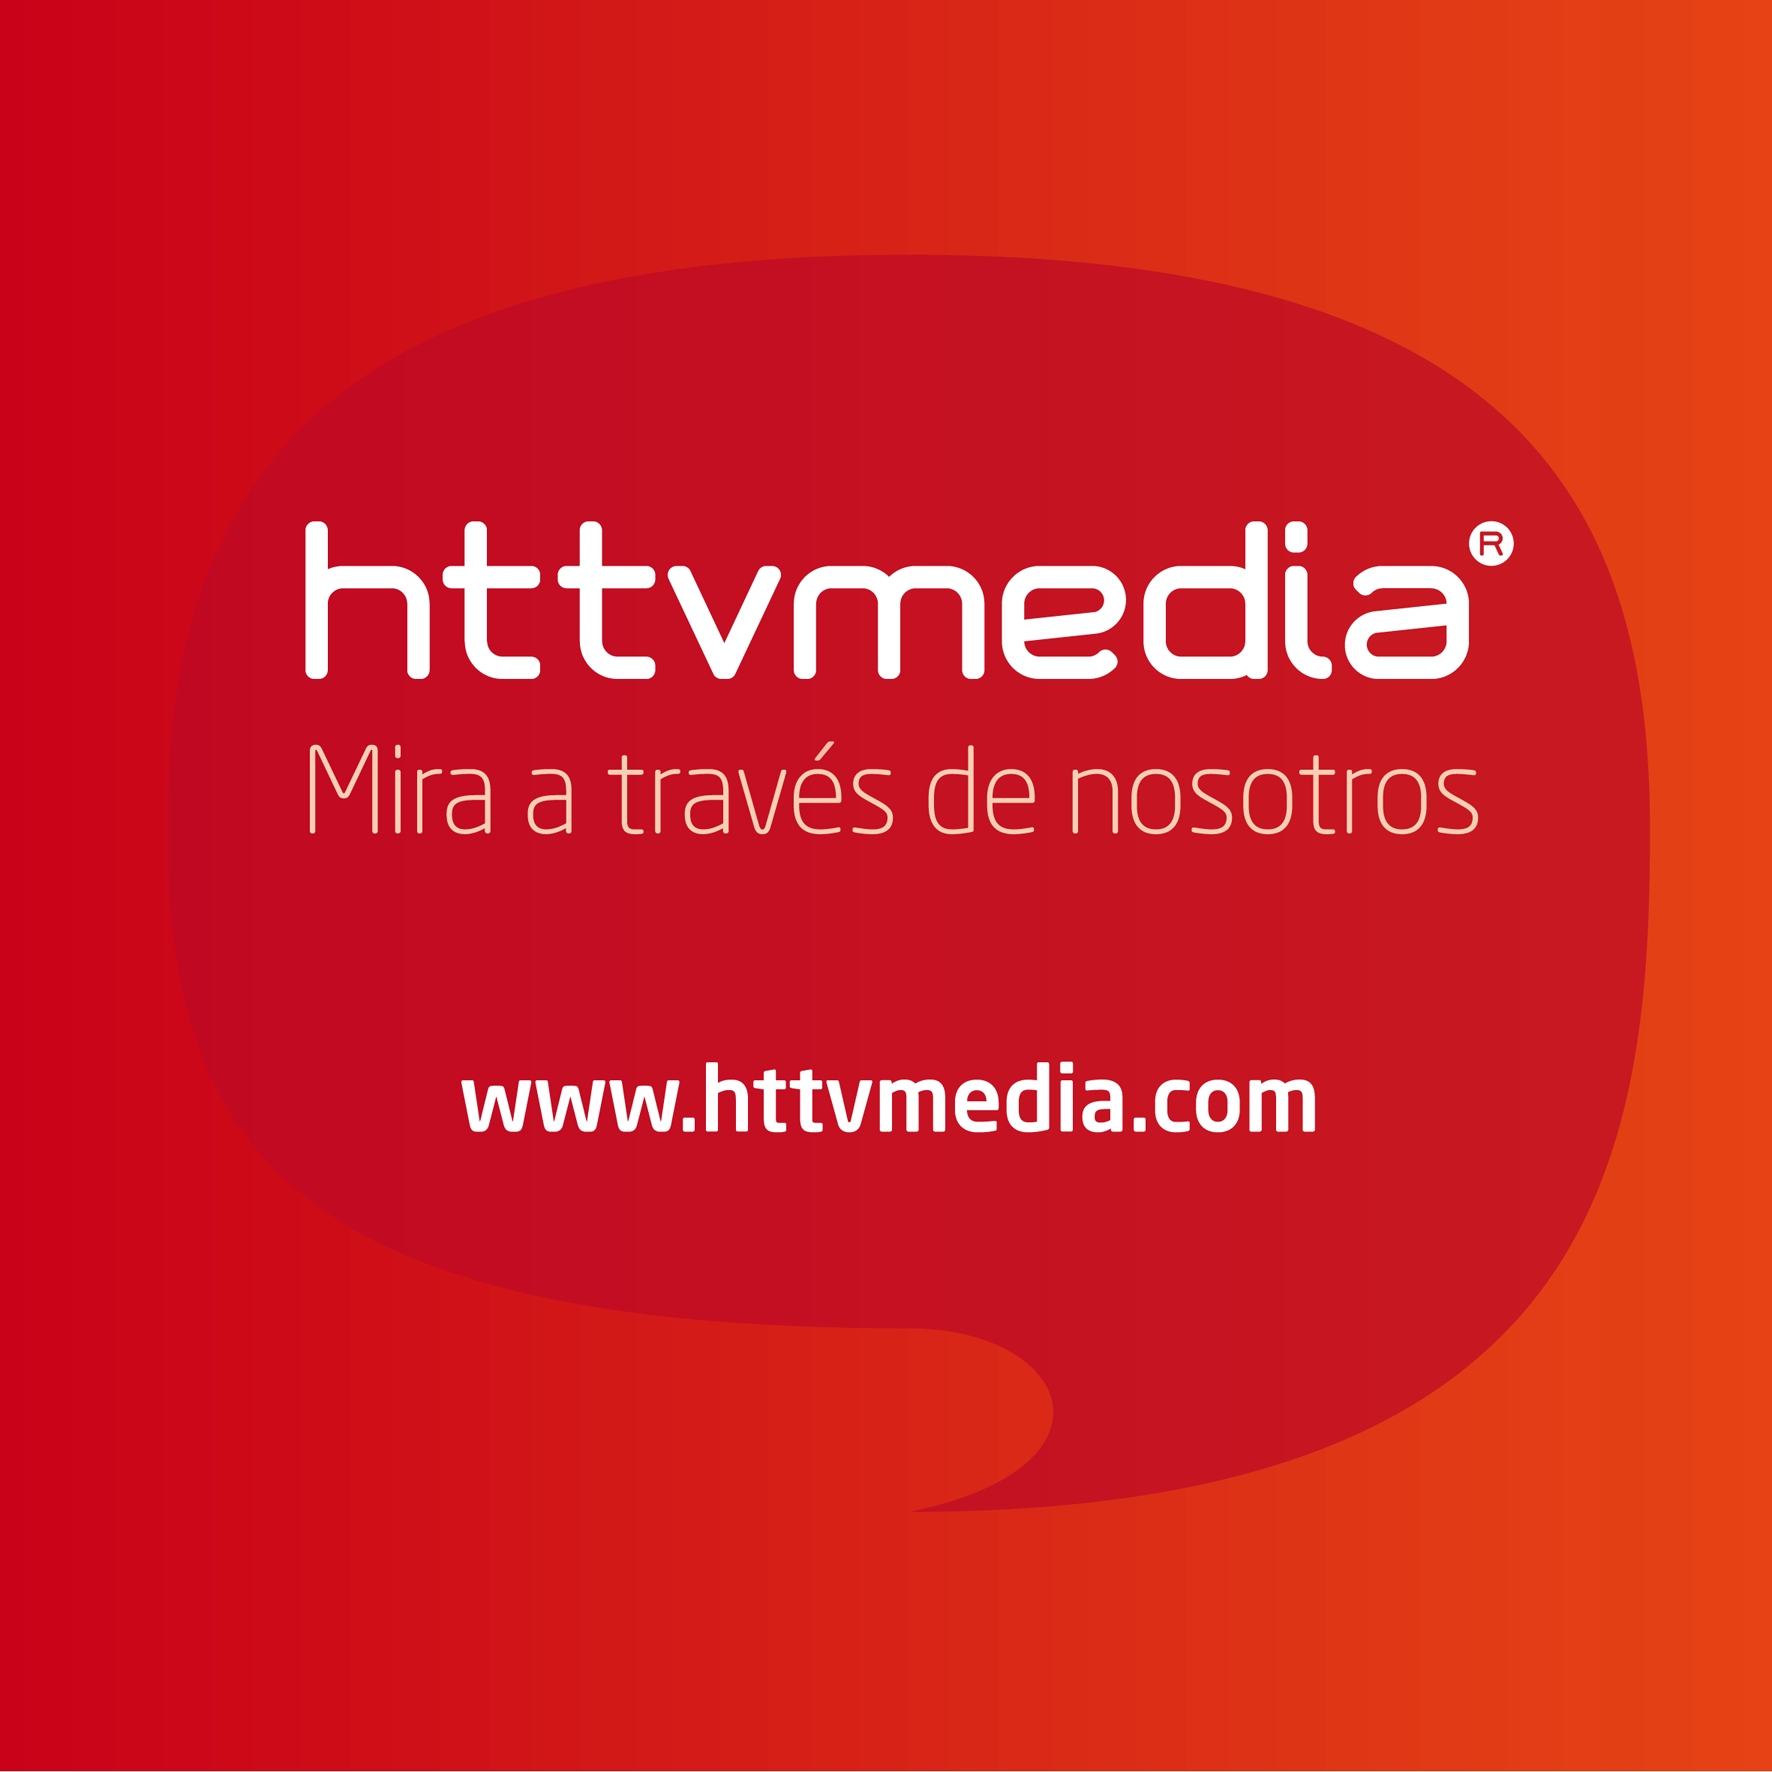 Httv Media